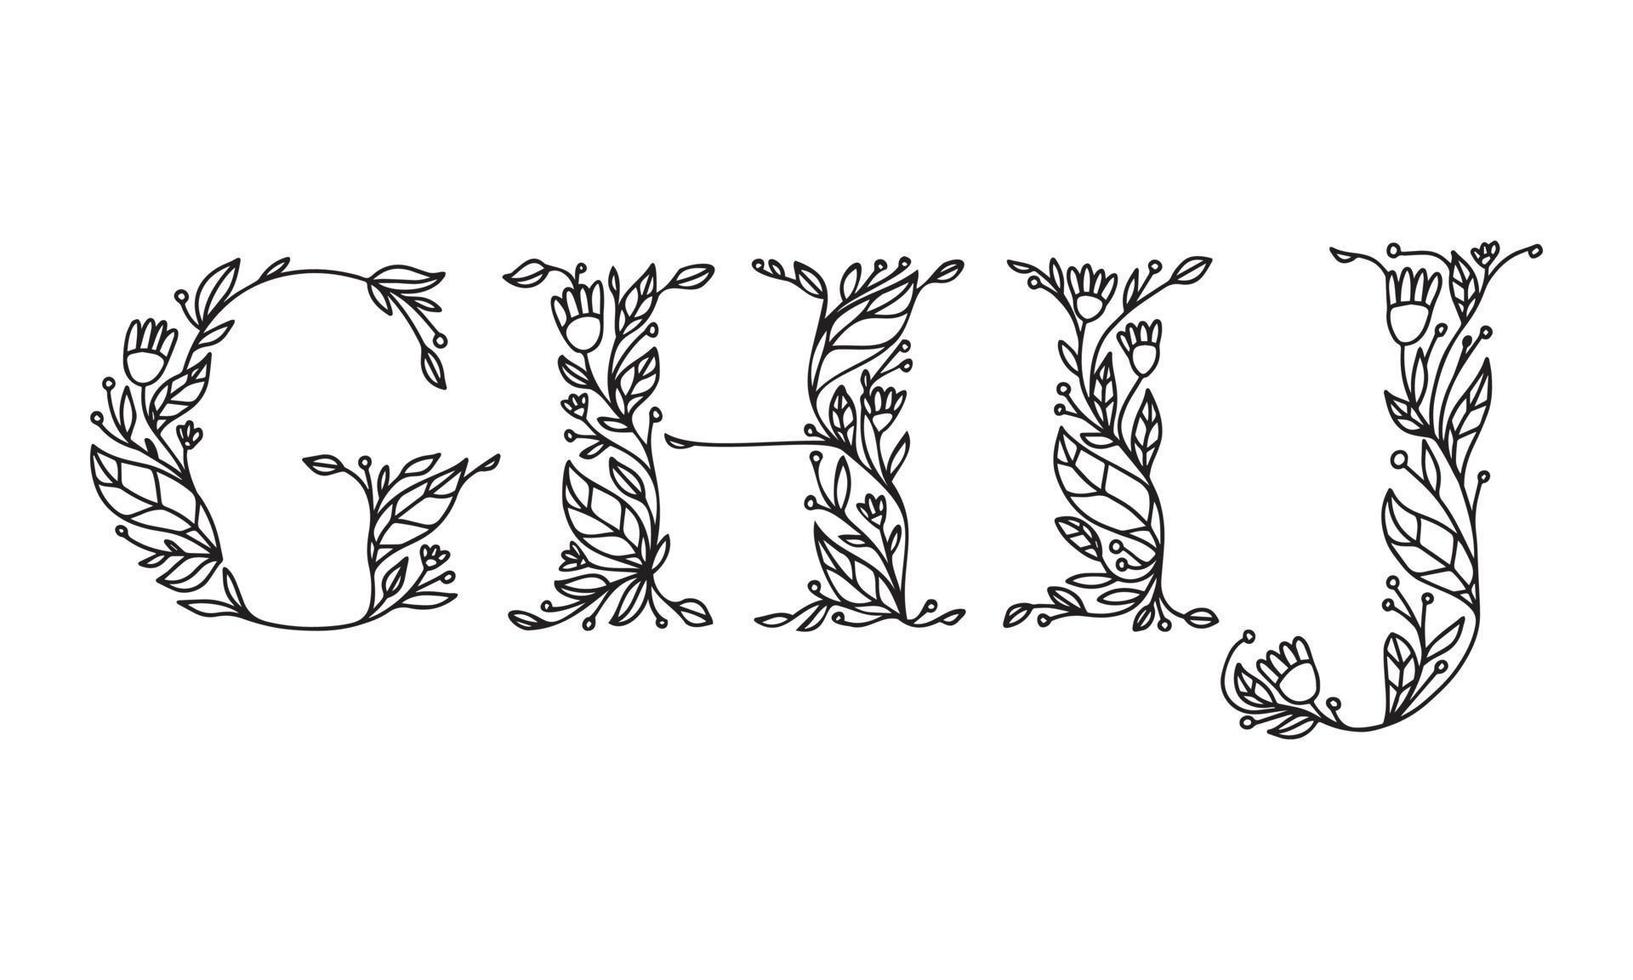 illustrazione floreale alfabeto carattere grafico vettoriale realizzato da fiori e foglie pianta creativa linea arte disegnata a mano per natura astratta e naturale lo stile sembra in un design monocromatico unico decorazione